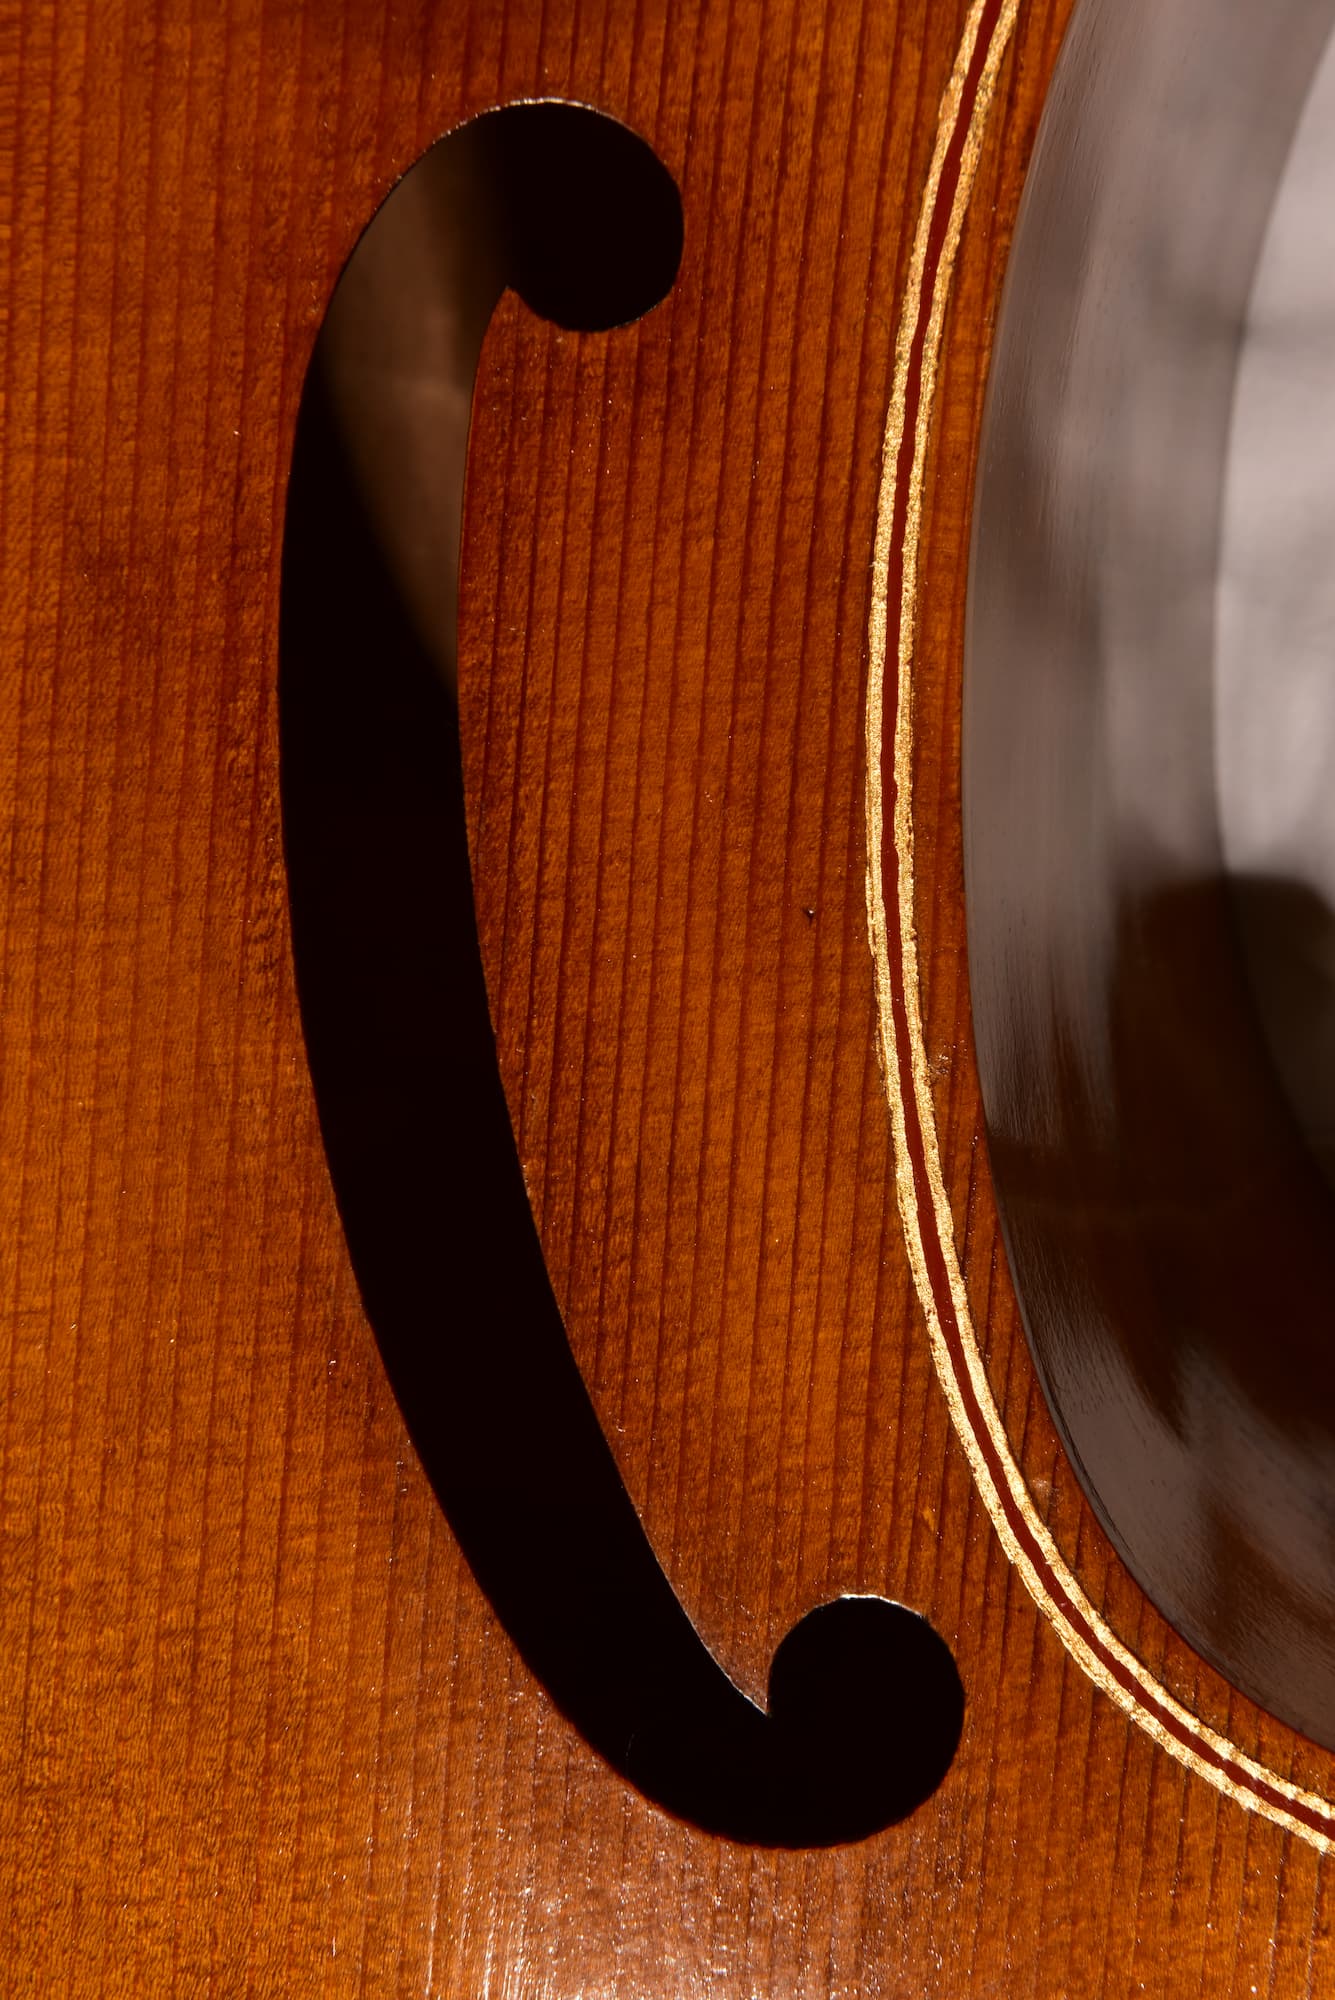 Bass viol Michel Colichon